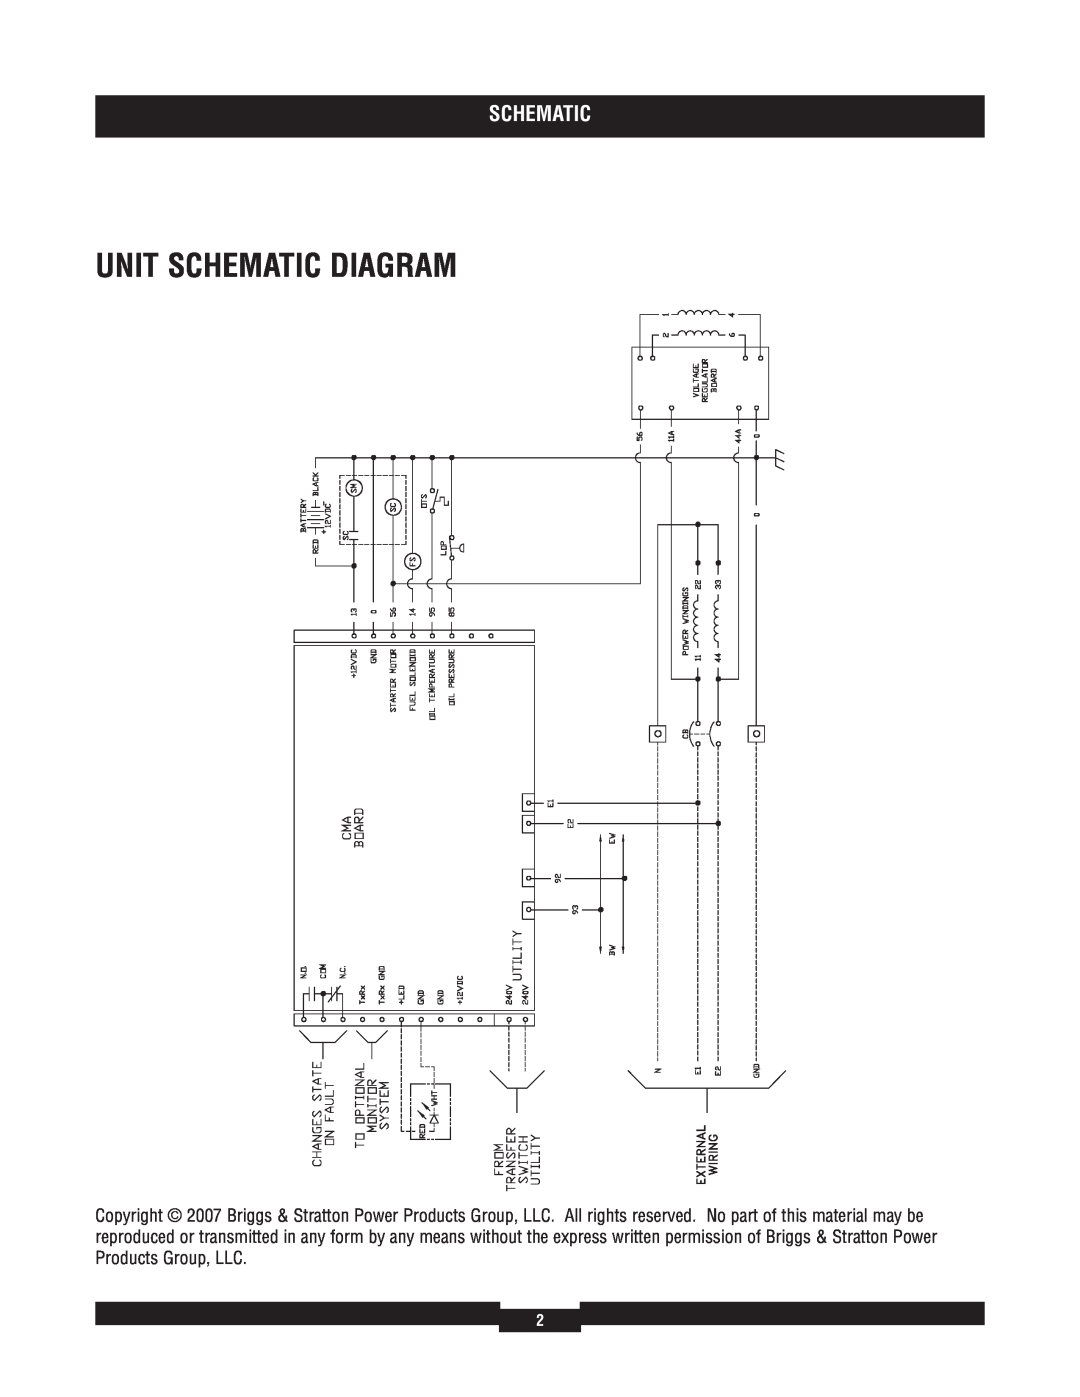 Briggs & Stratton 40211 manual Unit Schematic Diagram 